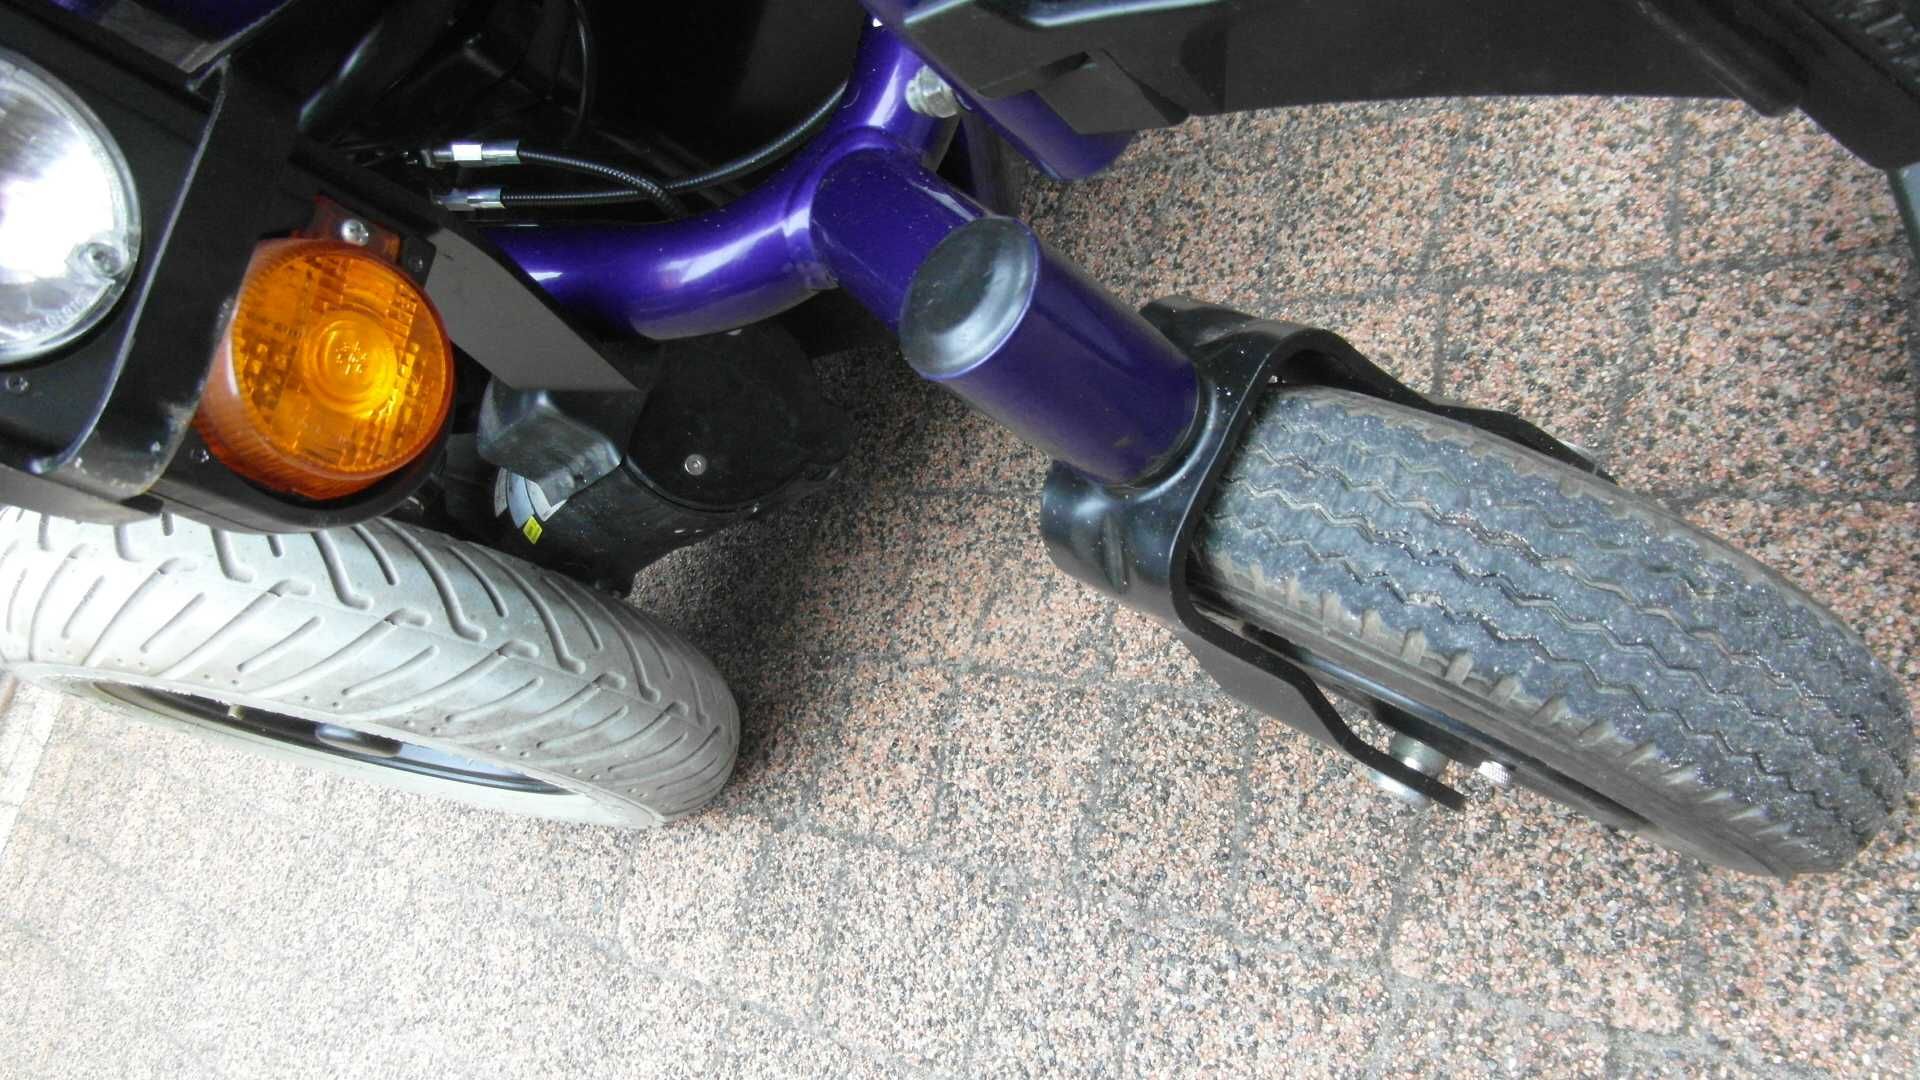 Wózek inwalidzki elektryczny Meyra Champ, prędkość 6 km/h